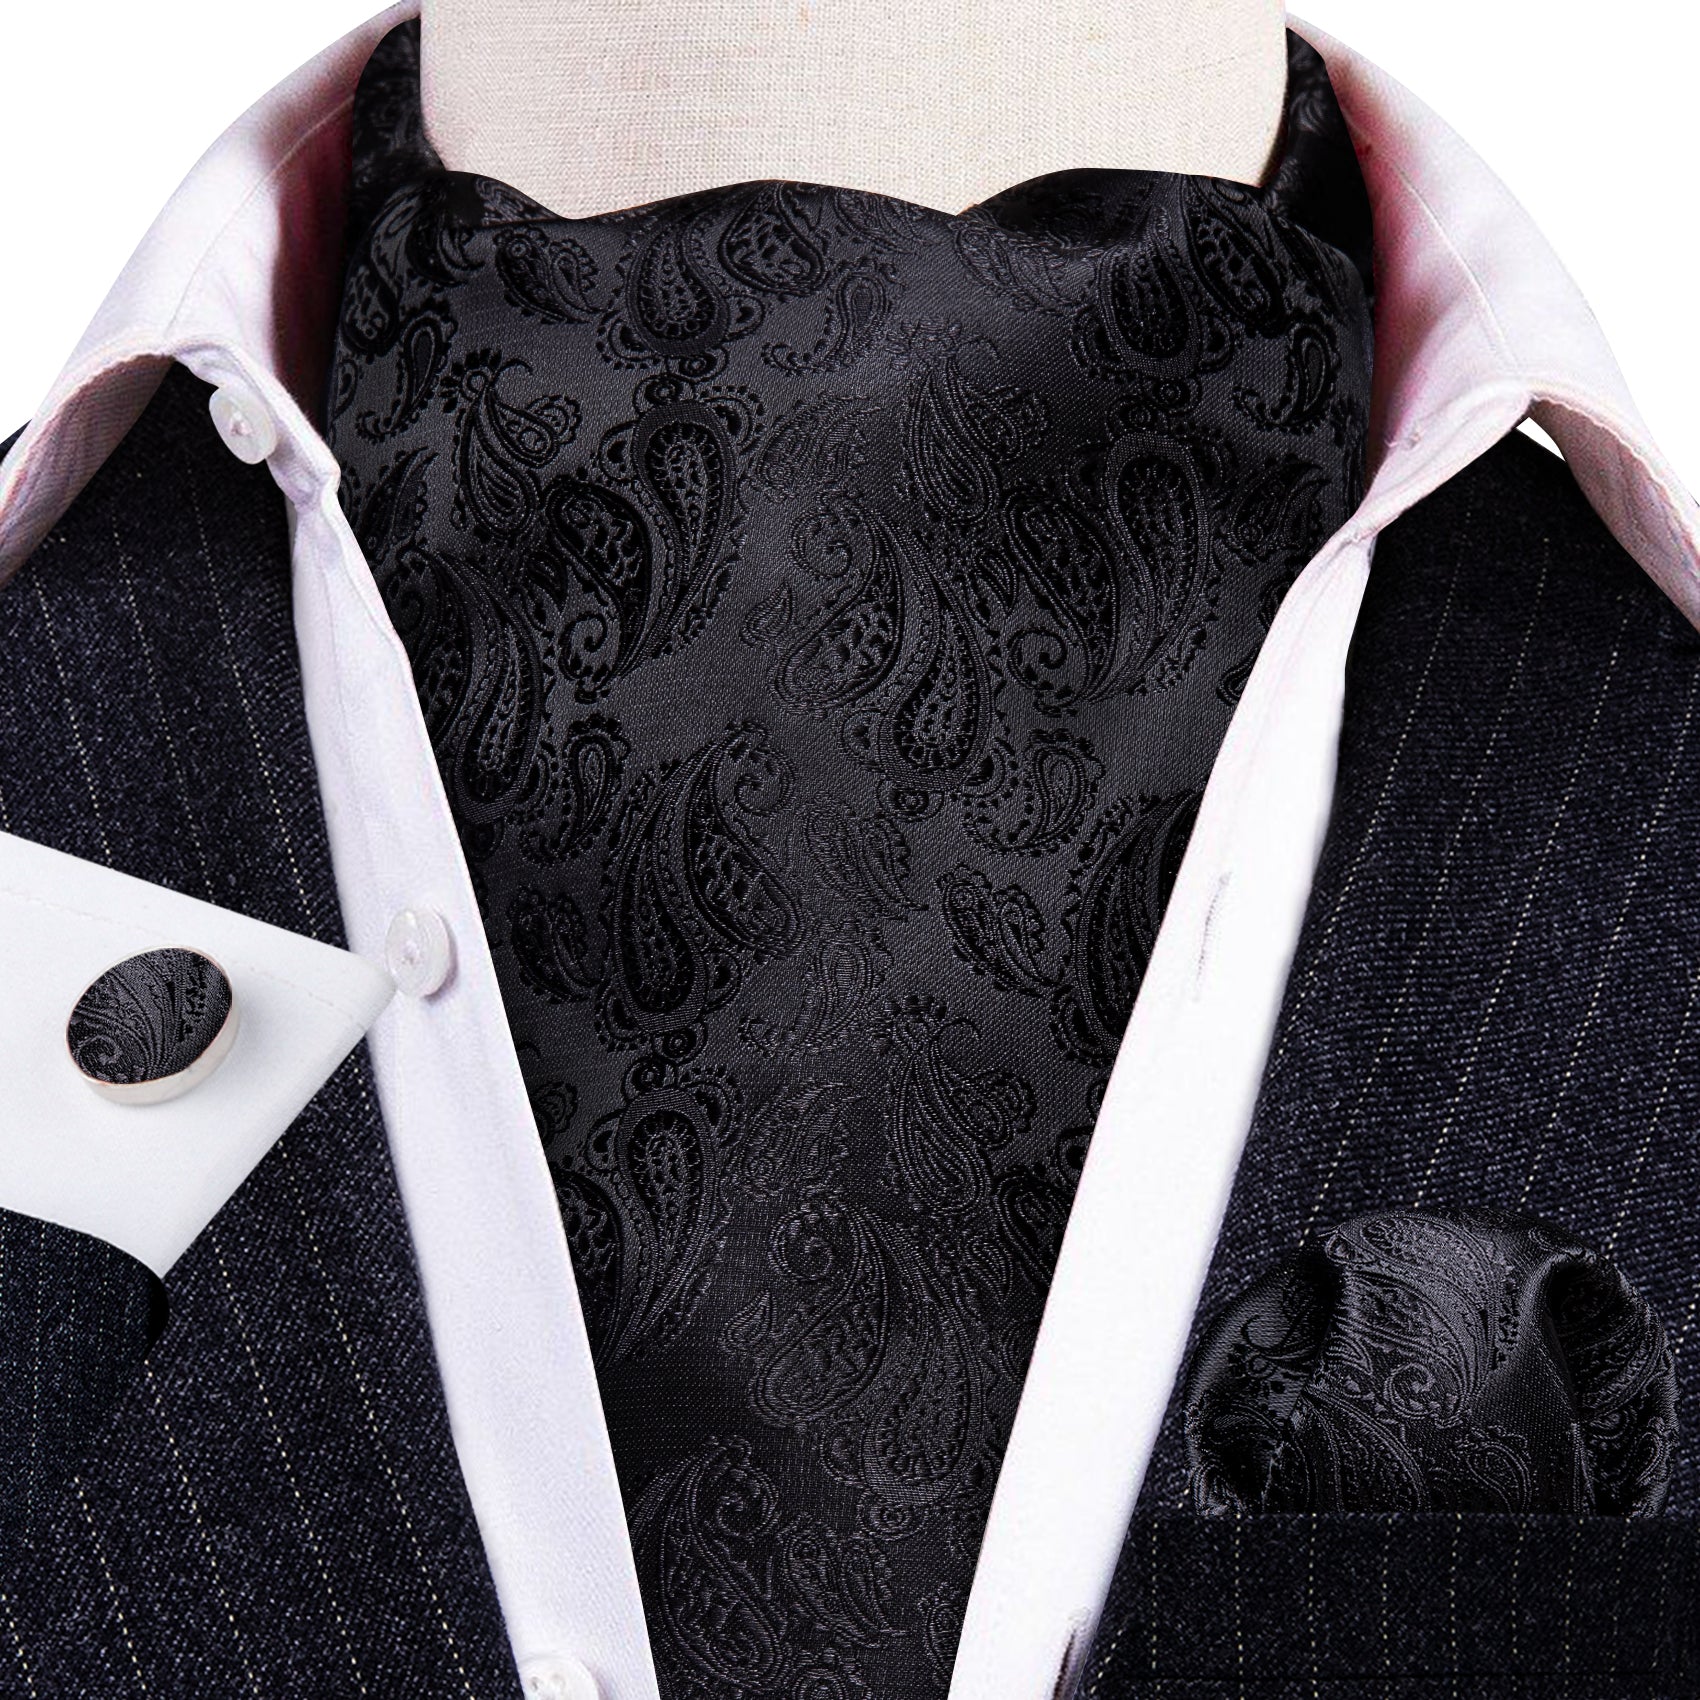 Black Paisley Silk Ascot Tie Handkerchief Cufflinks Set